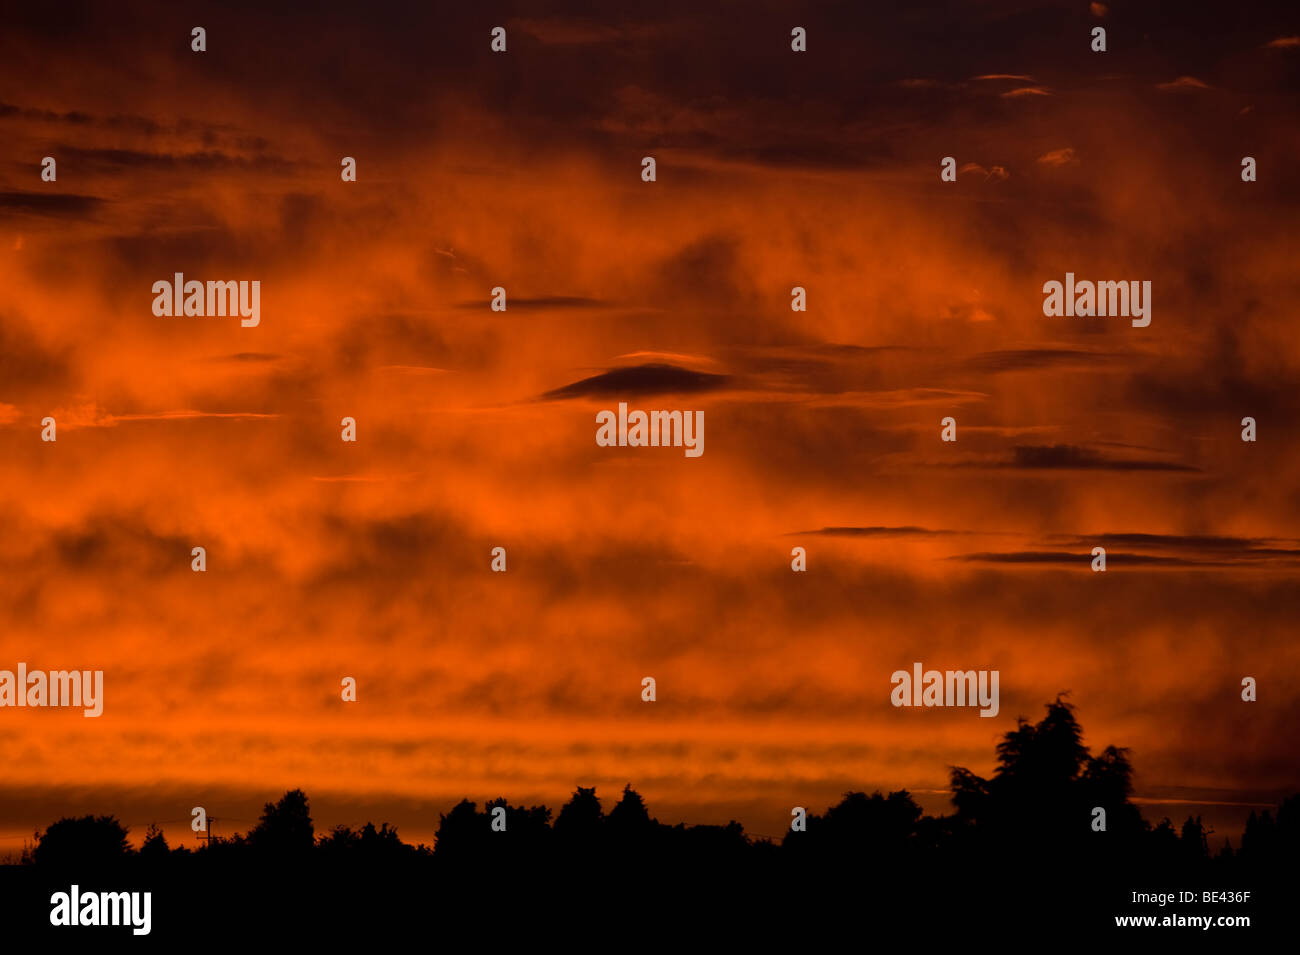 Linsenförmige Wolken im Bild gegen ein tief rot und Orange feurigen Sonnenuntergang Blick fast wie fremde Besucher in den Himmel Stockfoto